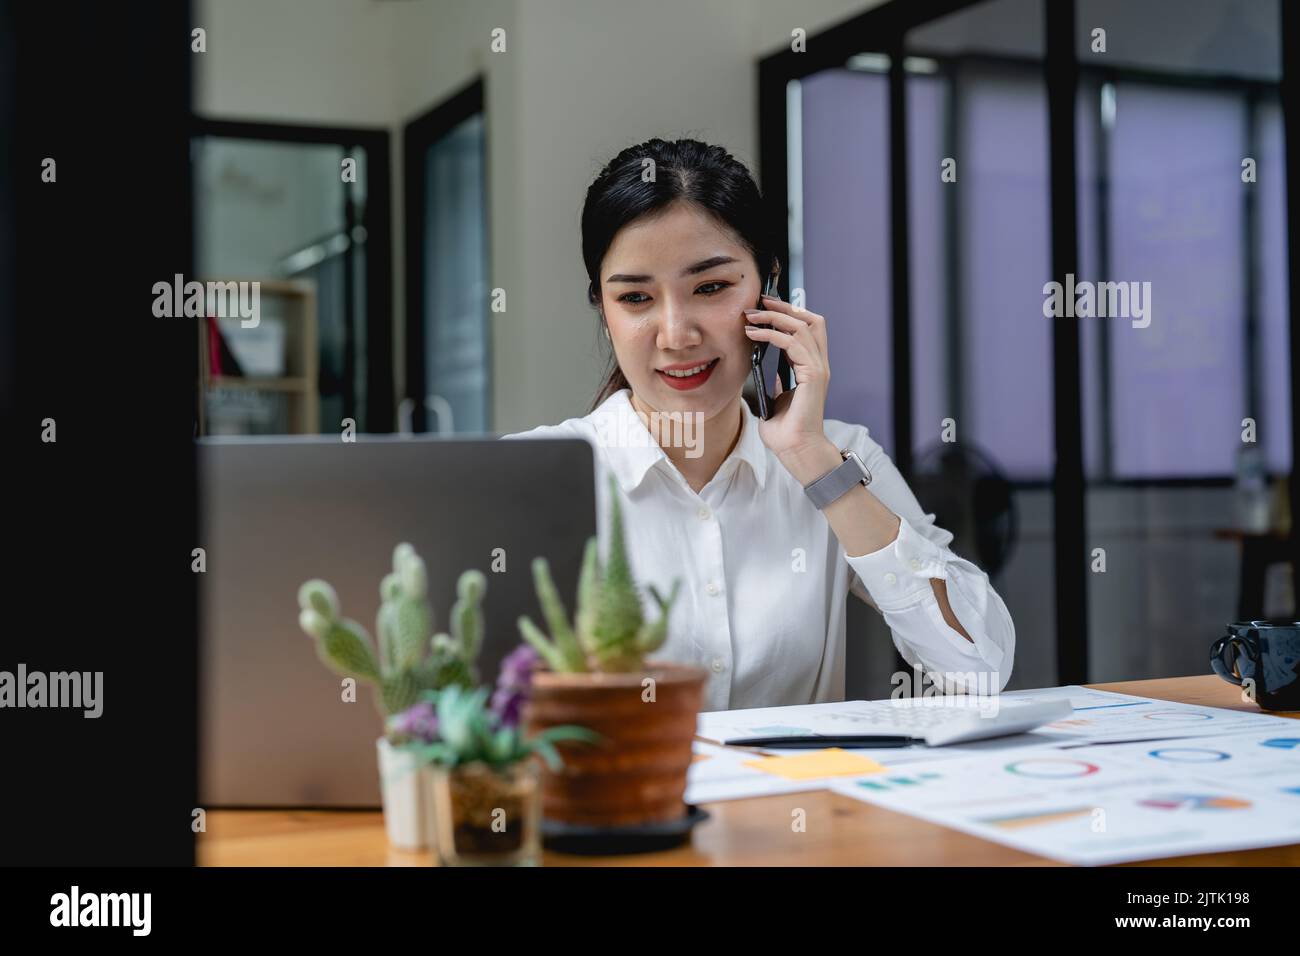 jeune femme asiatique qui parle sur son téléphone portable et souriait lorsqu'elle est assise à son bureau. Banque D'Images